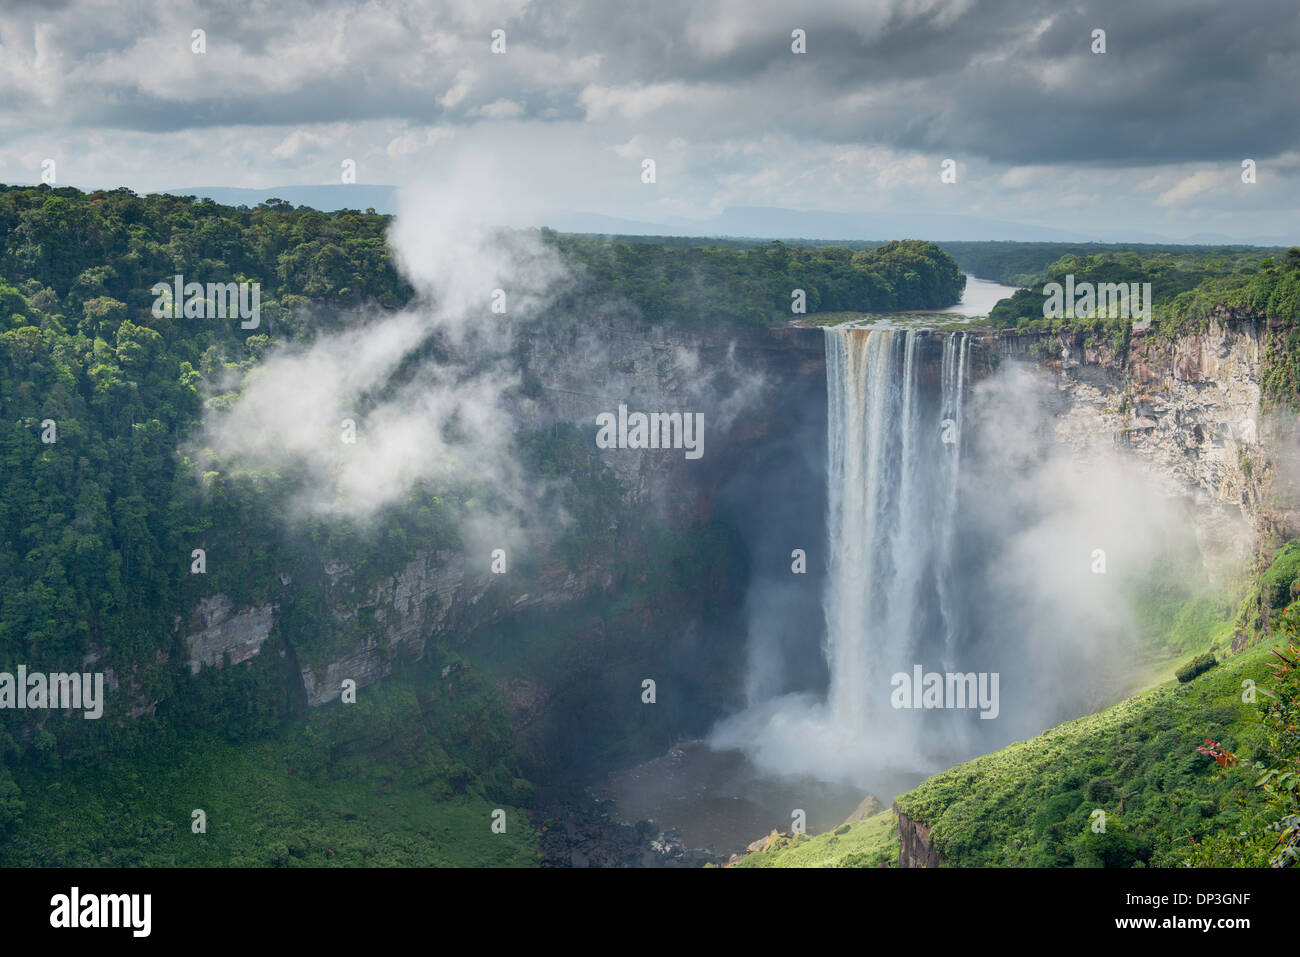 Las cataratas de Kaieteur, el Parque Nacional de Kaieteur, Guyana, Río de patata, combina el enorme volumen de agua con 822 caída del pie Foto de stock